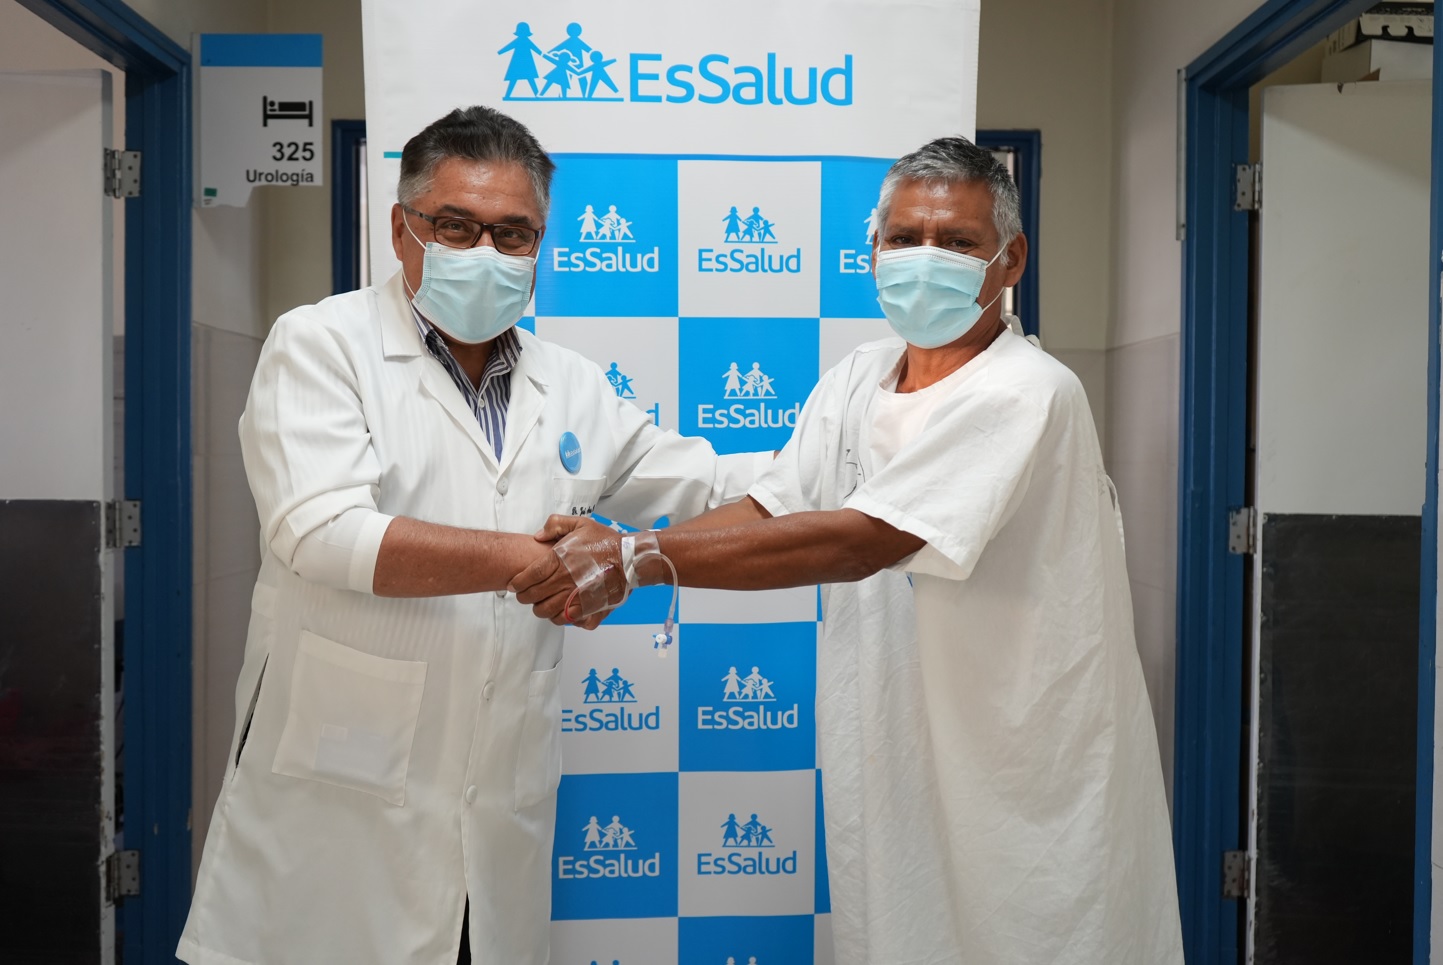 Essalud - EsSalud: Médicos del hospital Almenara curan estrechez urinaria en paciente de 61 años con moderna técnica quirúrgica